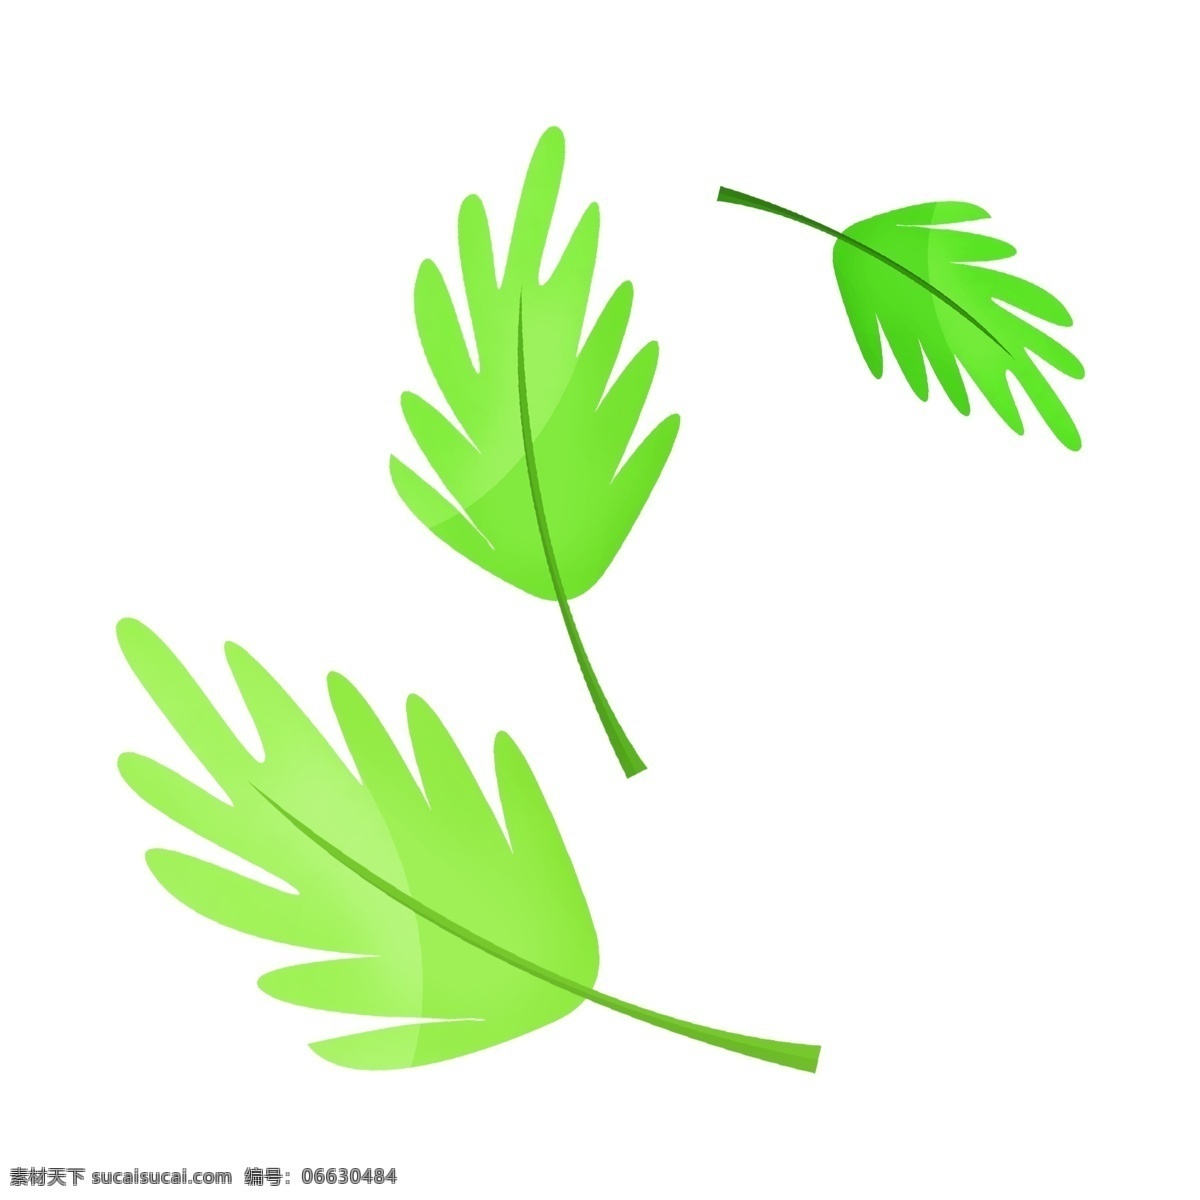 分叉 绿色 叶子 插画 分叉的叶子 卡通插画 绿叶插画 叶子插画 绿植插画 植物插画 掉落的叶子